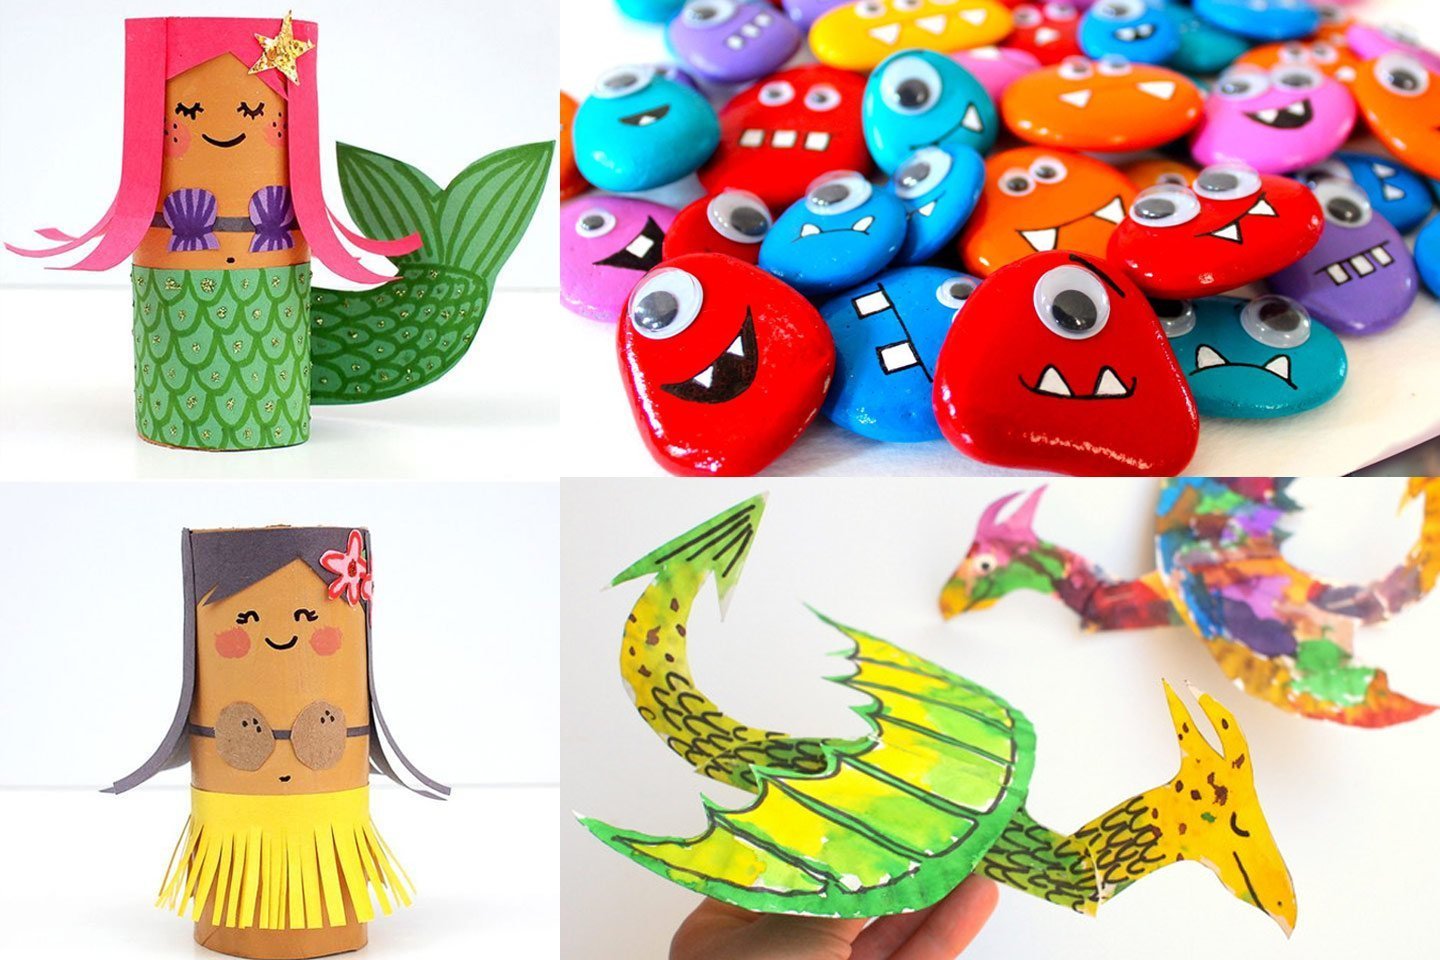 https://www.momooze.com/wp-content/uploads/2016/09/diy-crafts-for-kids.jpg